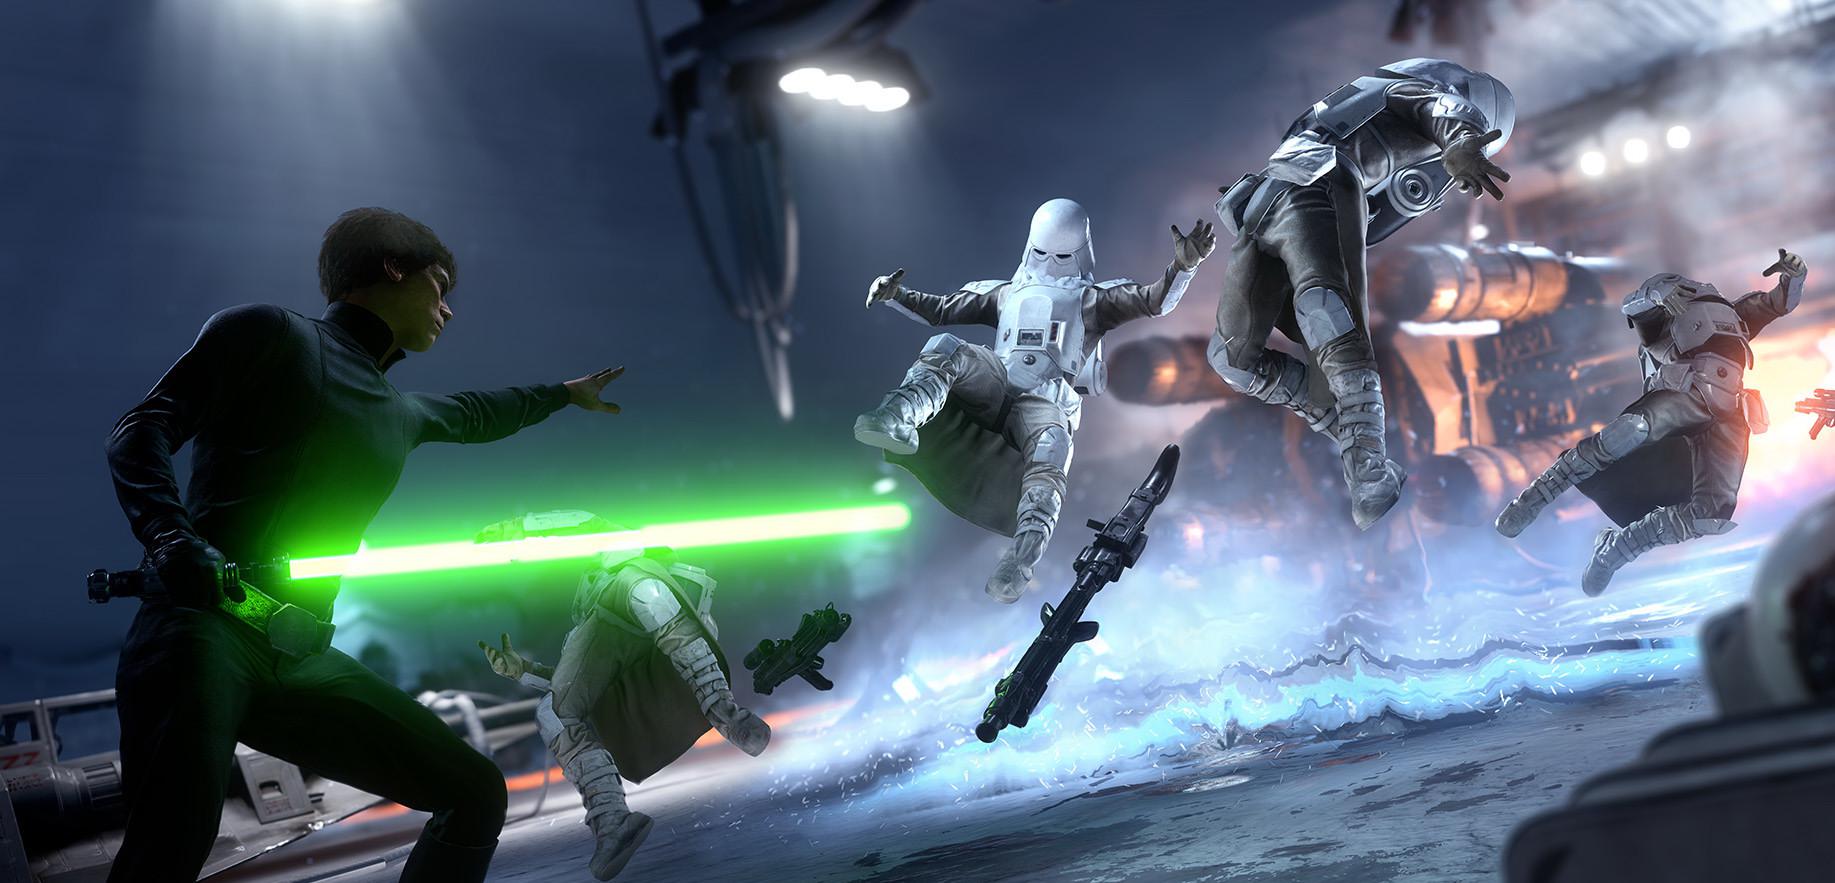 Premierowy patch do Star Wars: Battlefront i problemy posiadaczy edycji Ultimate